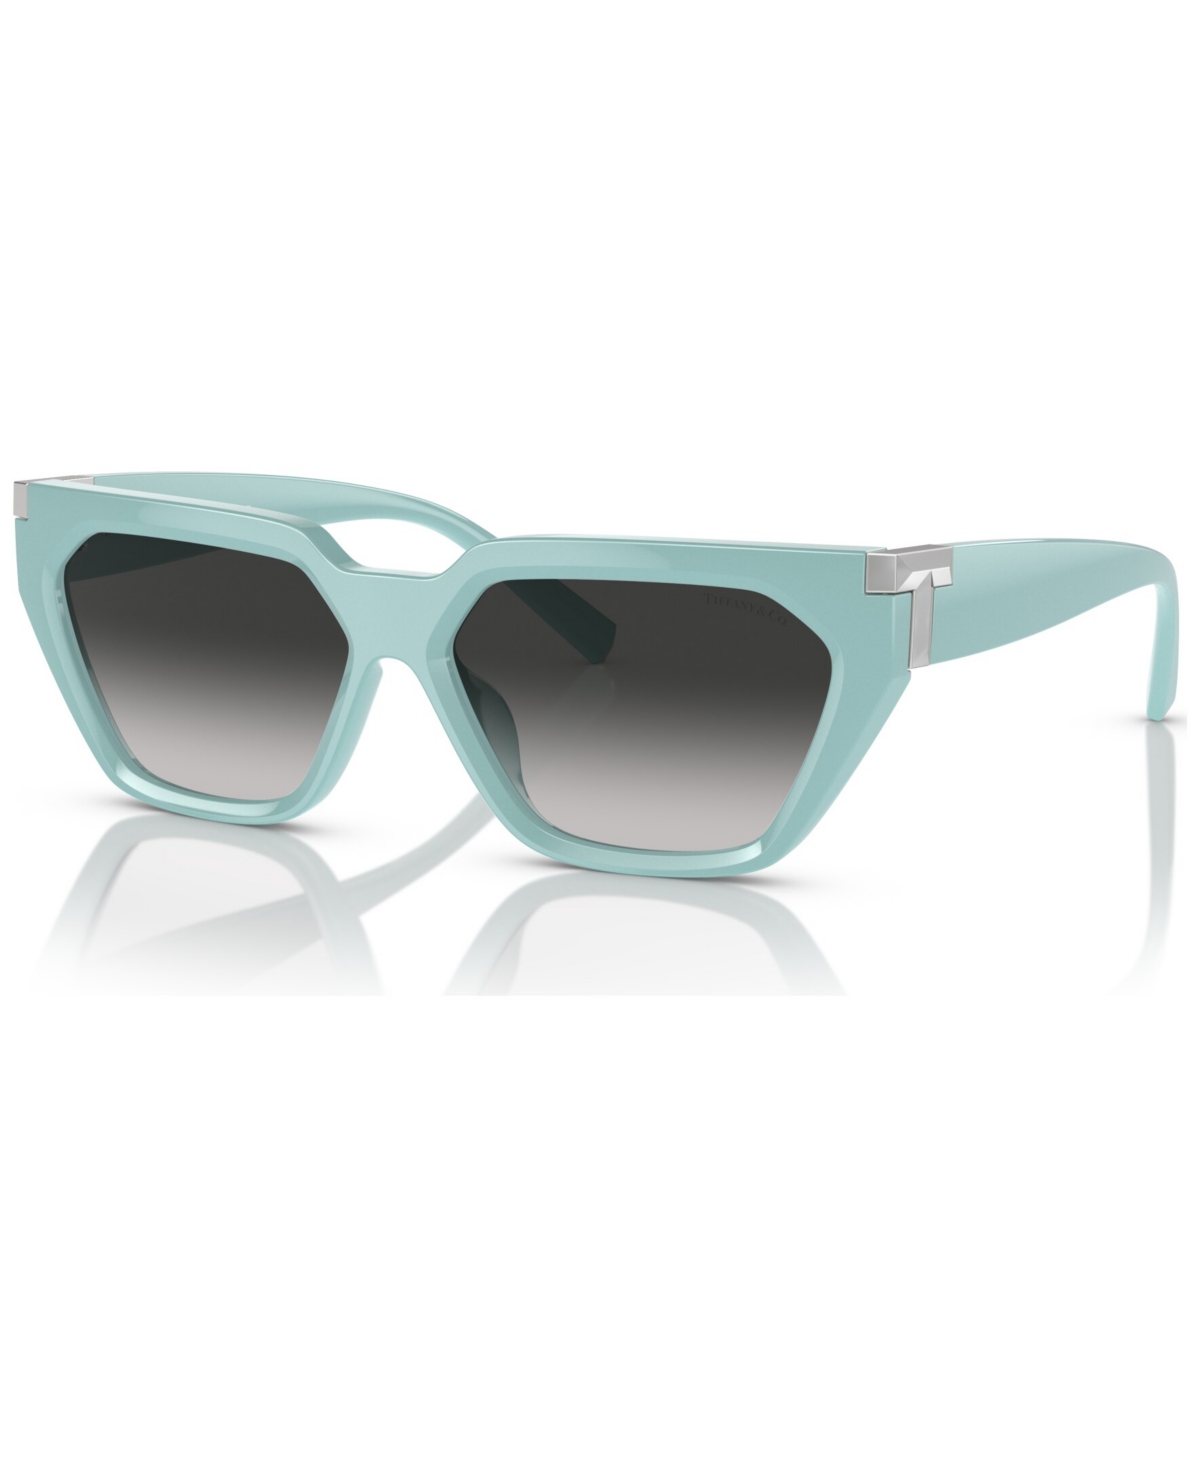 Tiffany & Co Women's Steve Mcqueen Sunglasses, Gradient Tf4205u In Tiffany Blue